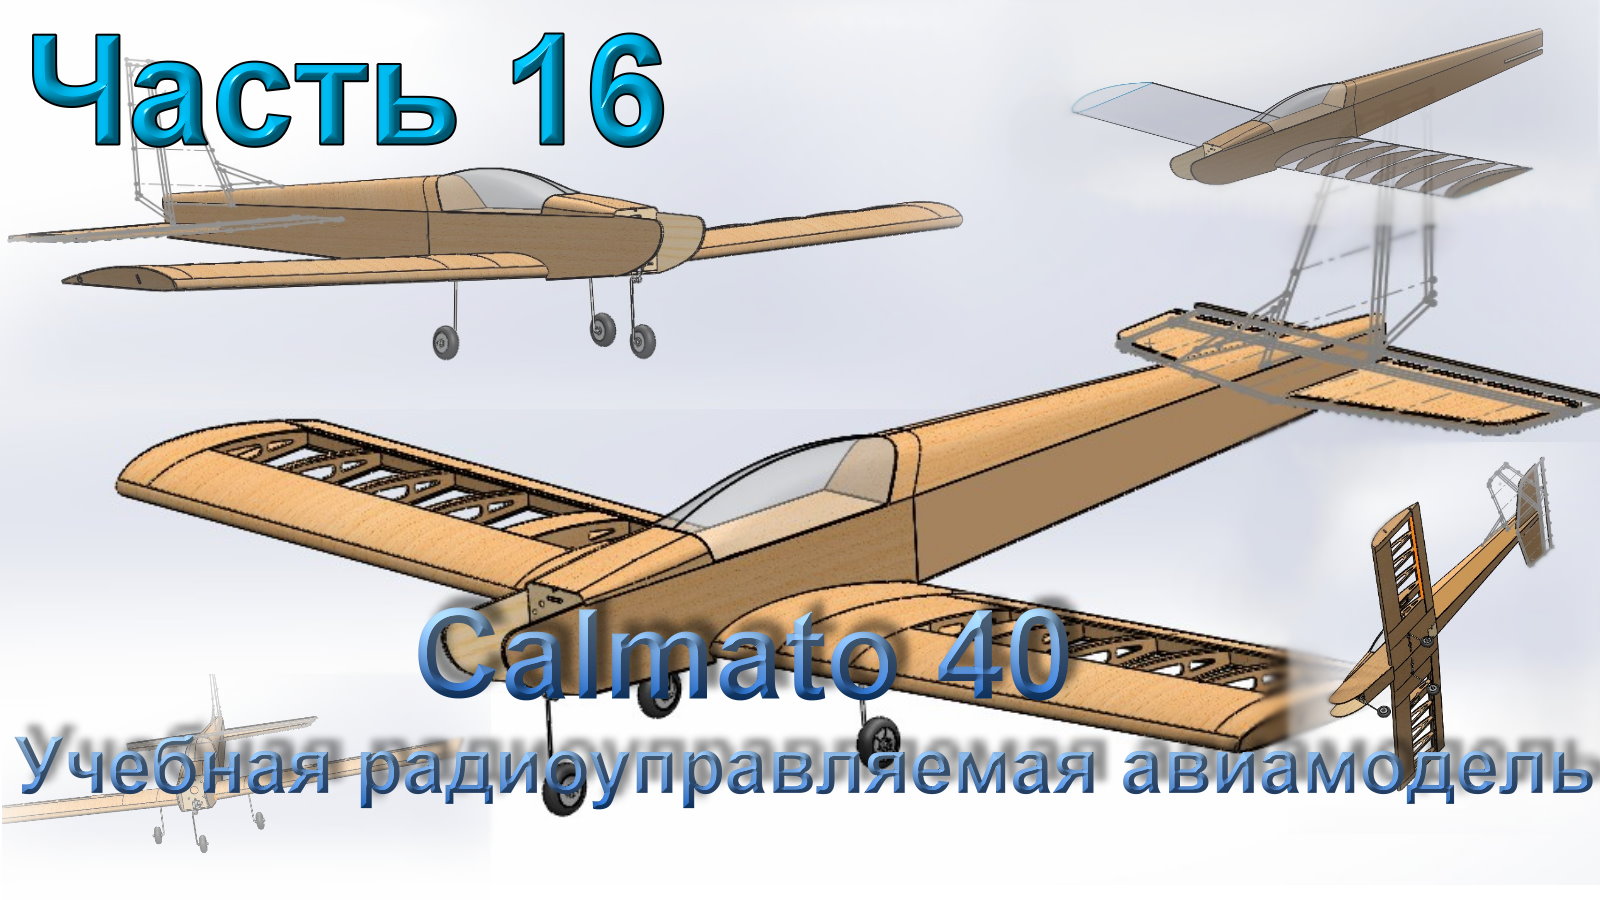 Учебная радиоуправляемая авиамодель Calmato 40 (часть 16)